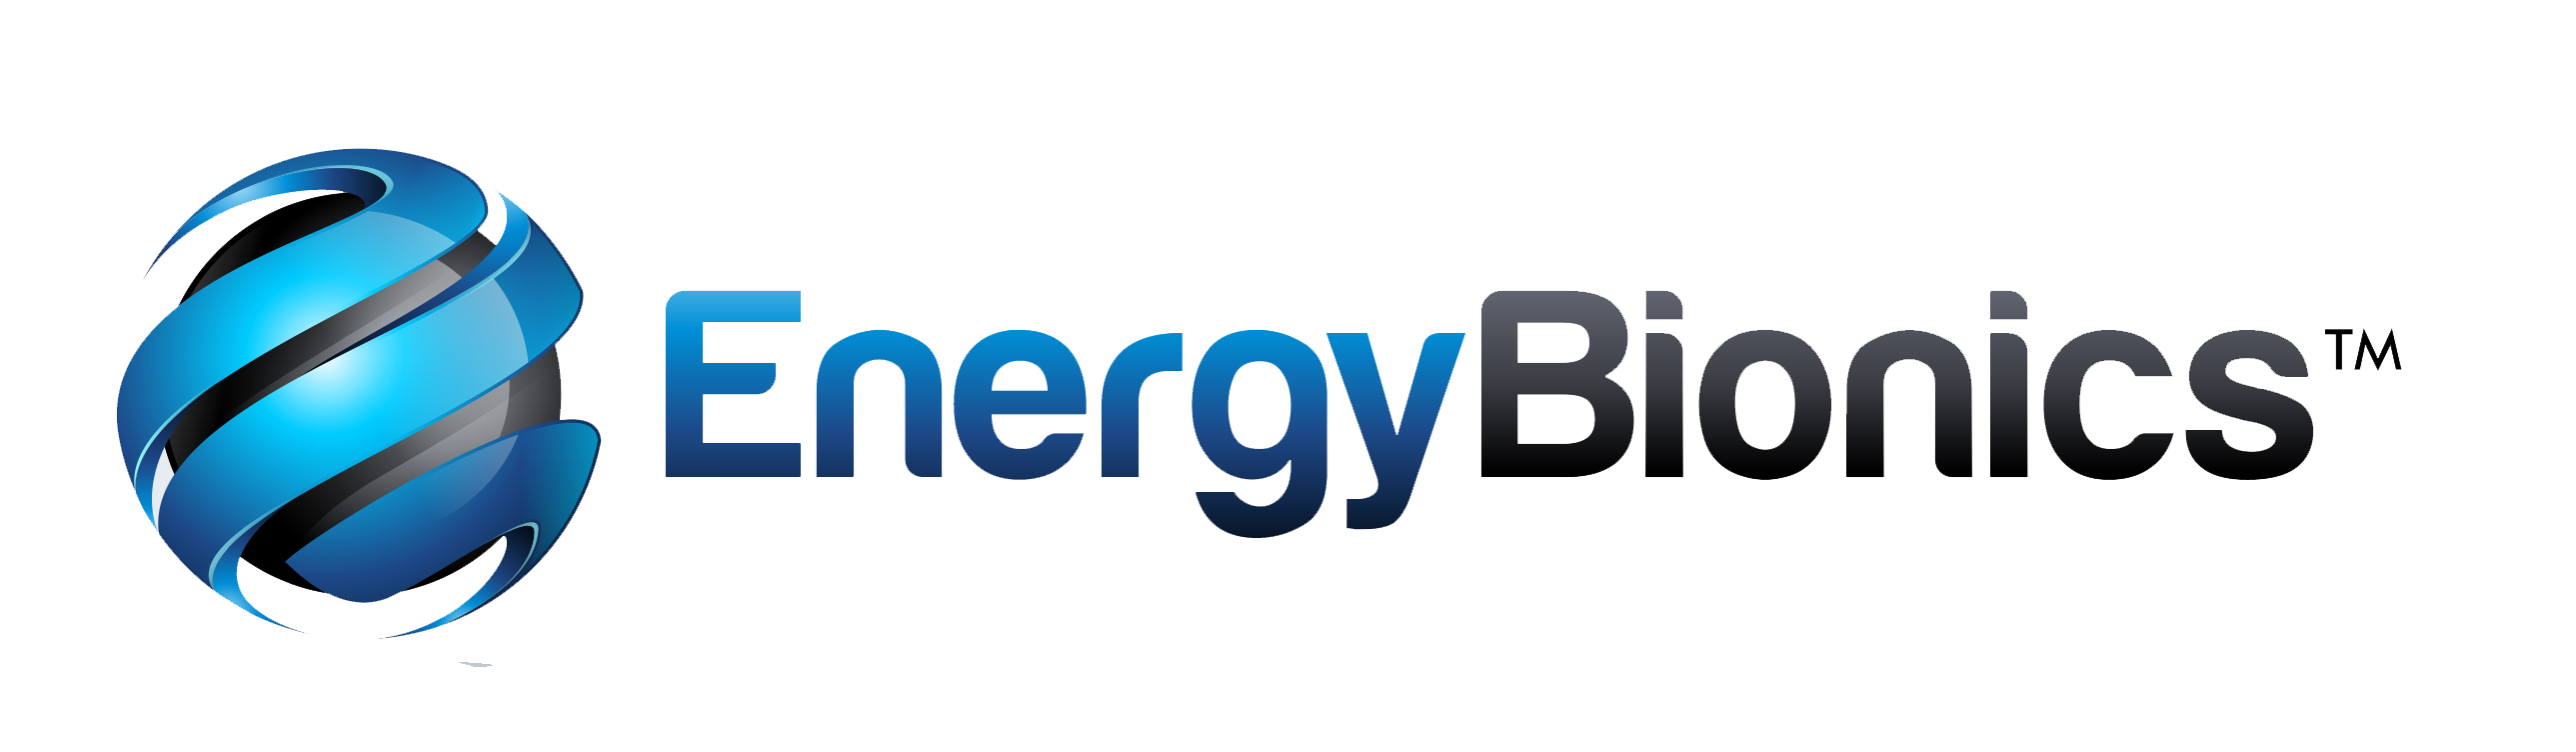 Energy Bionics logo